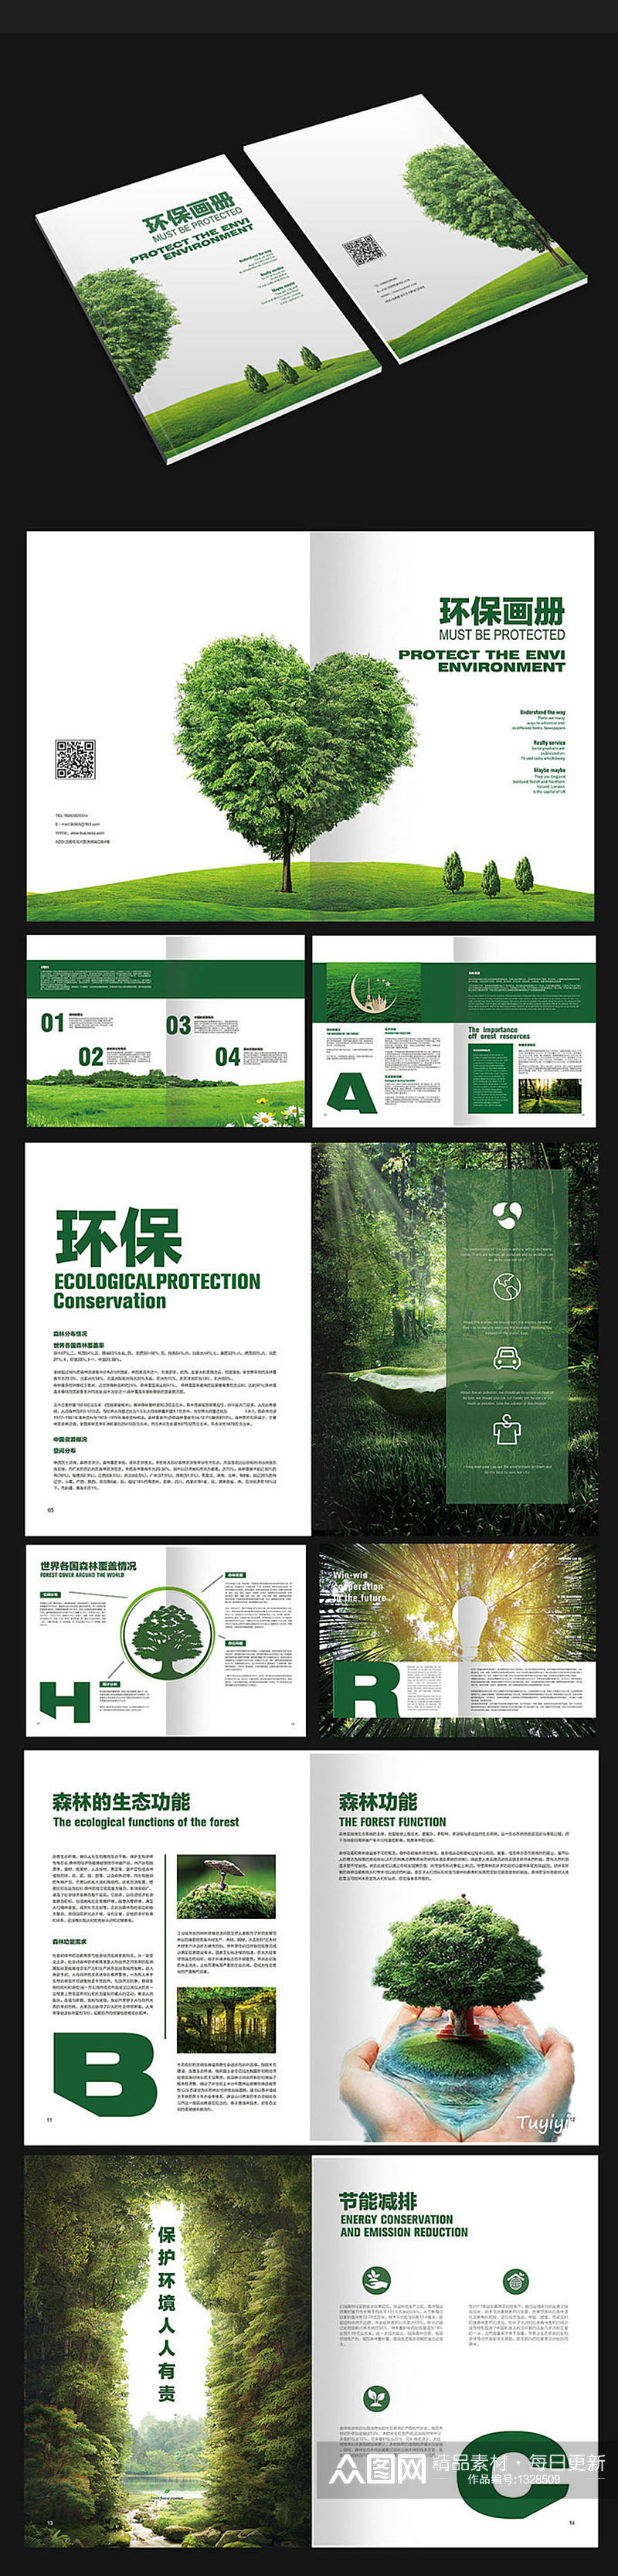 环保森林画册设计素材